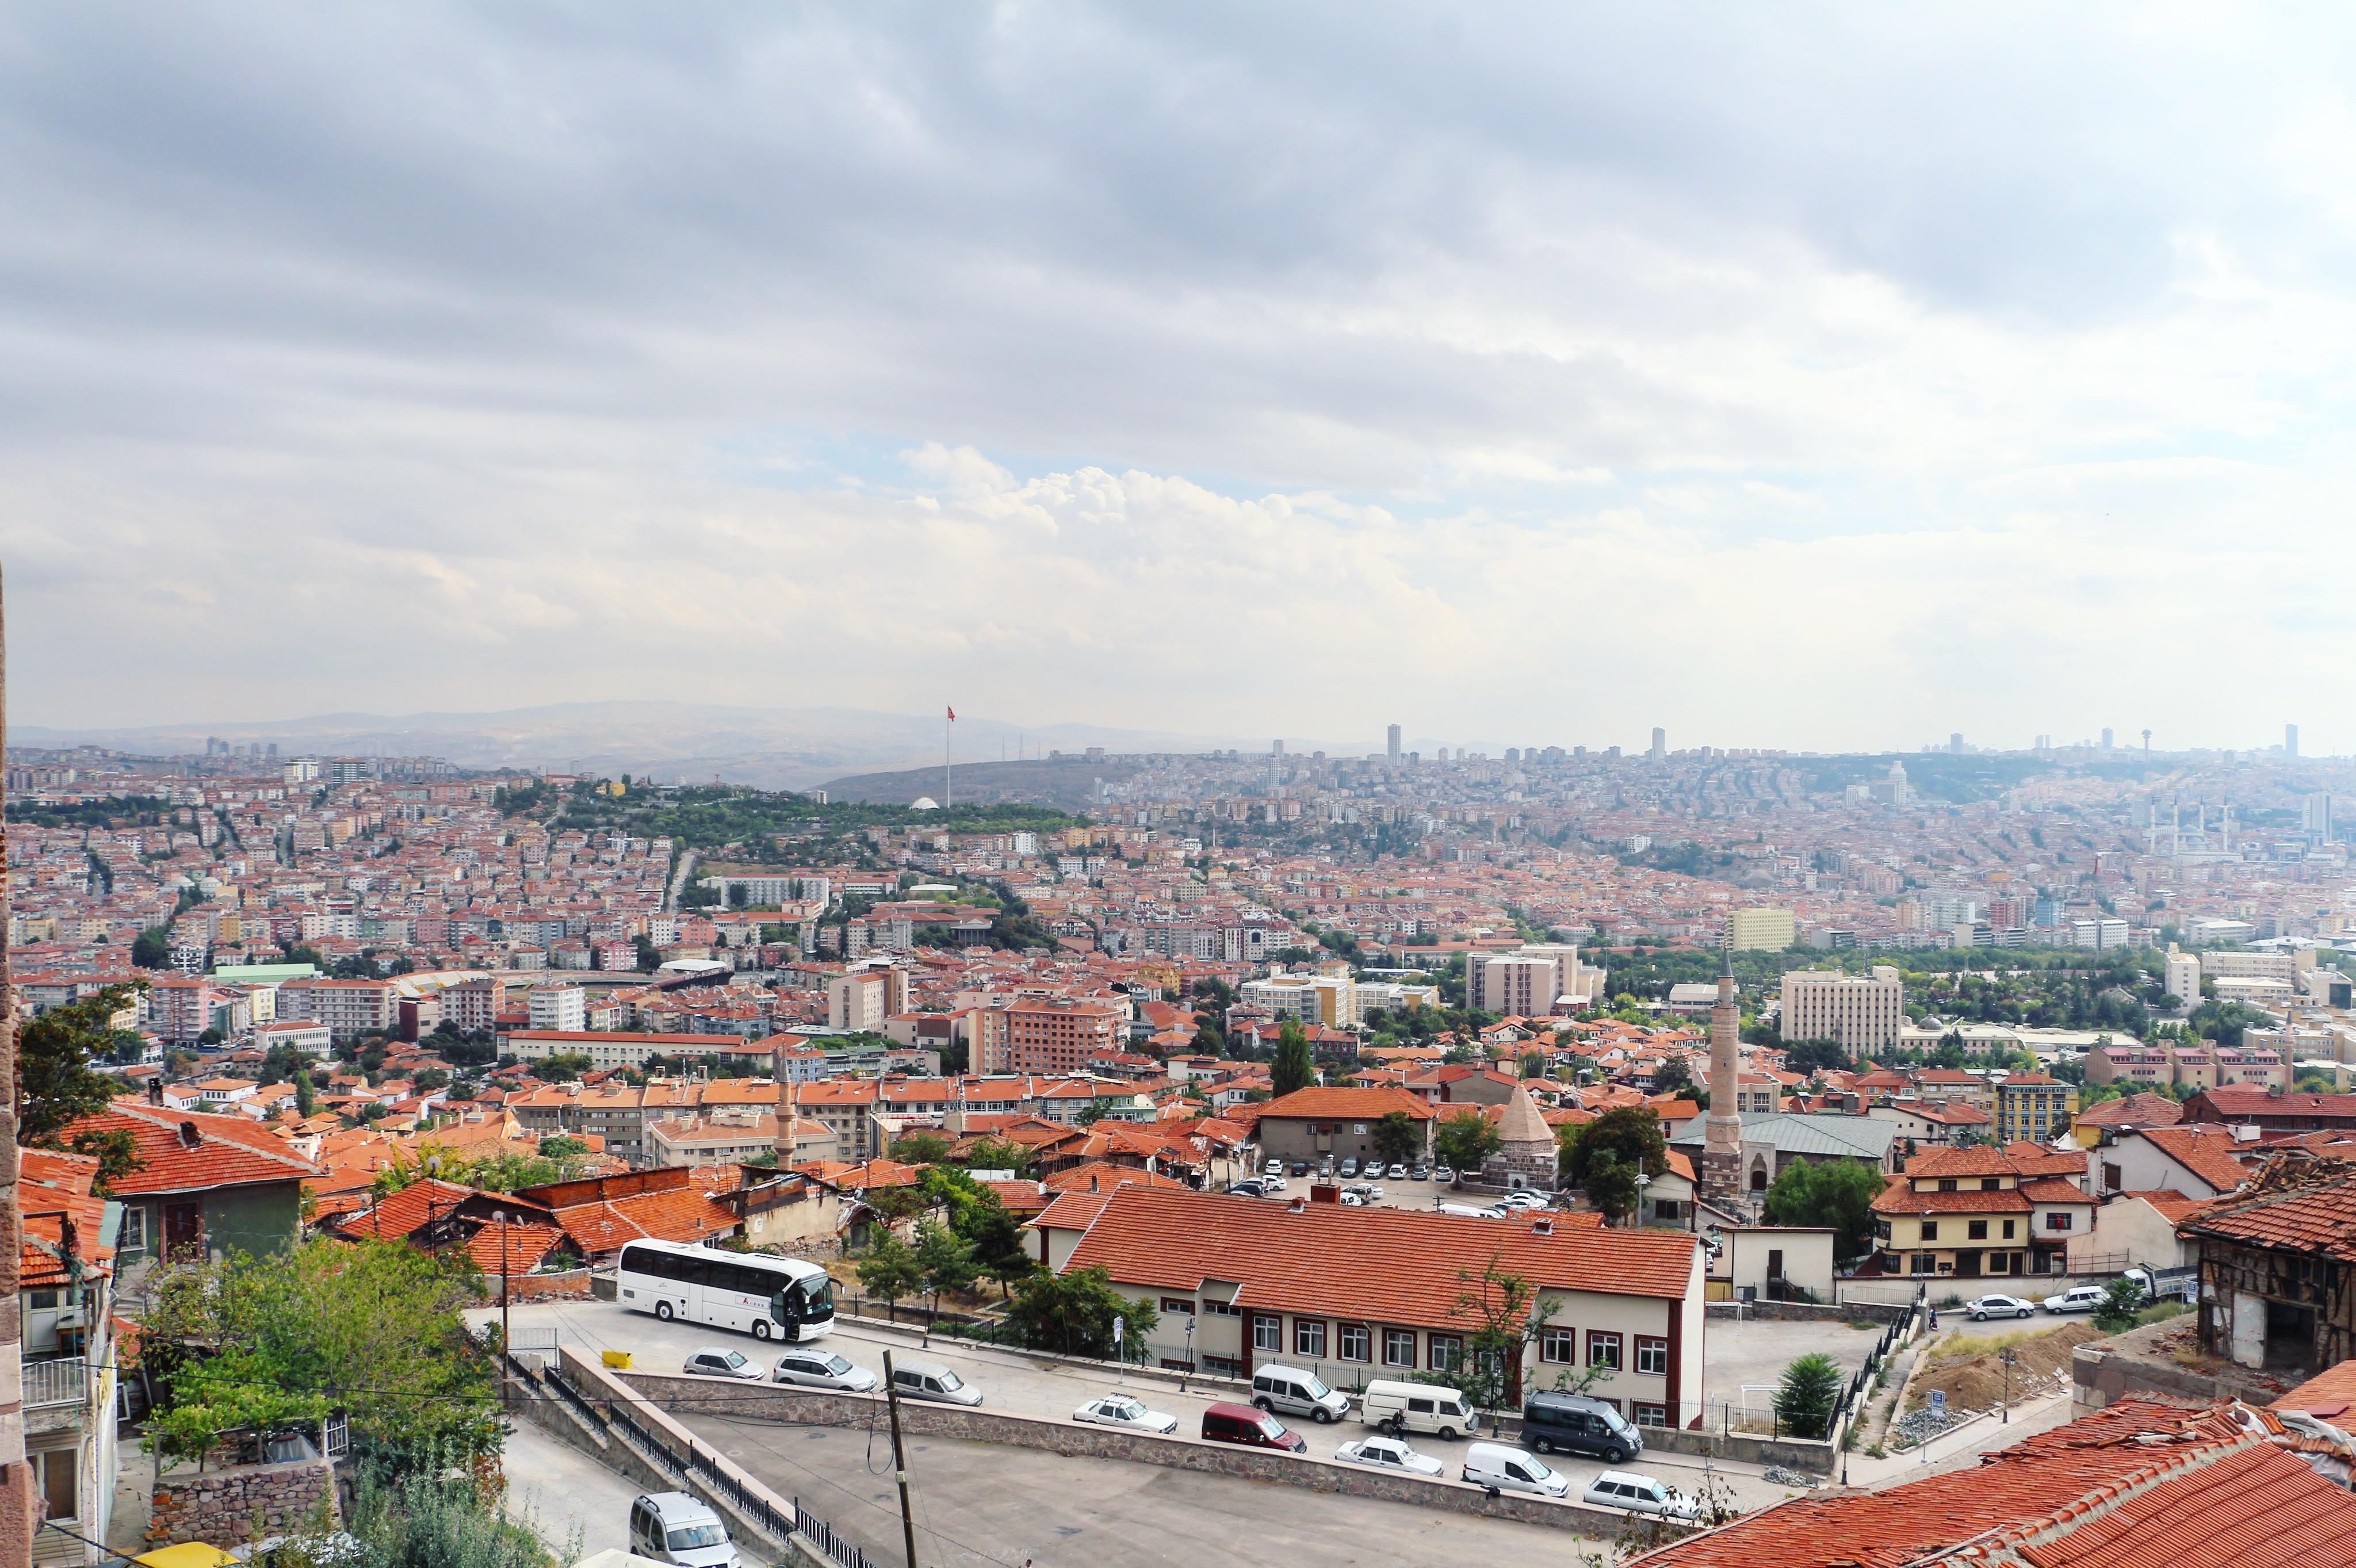 安卡拉古城土耳其首都最古老的区域是土耳其的历史缩影